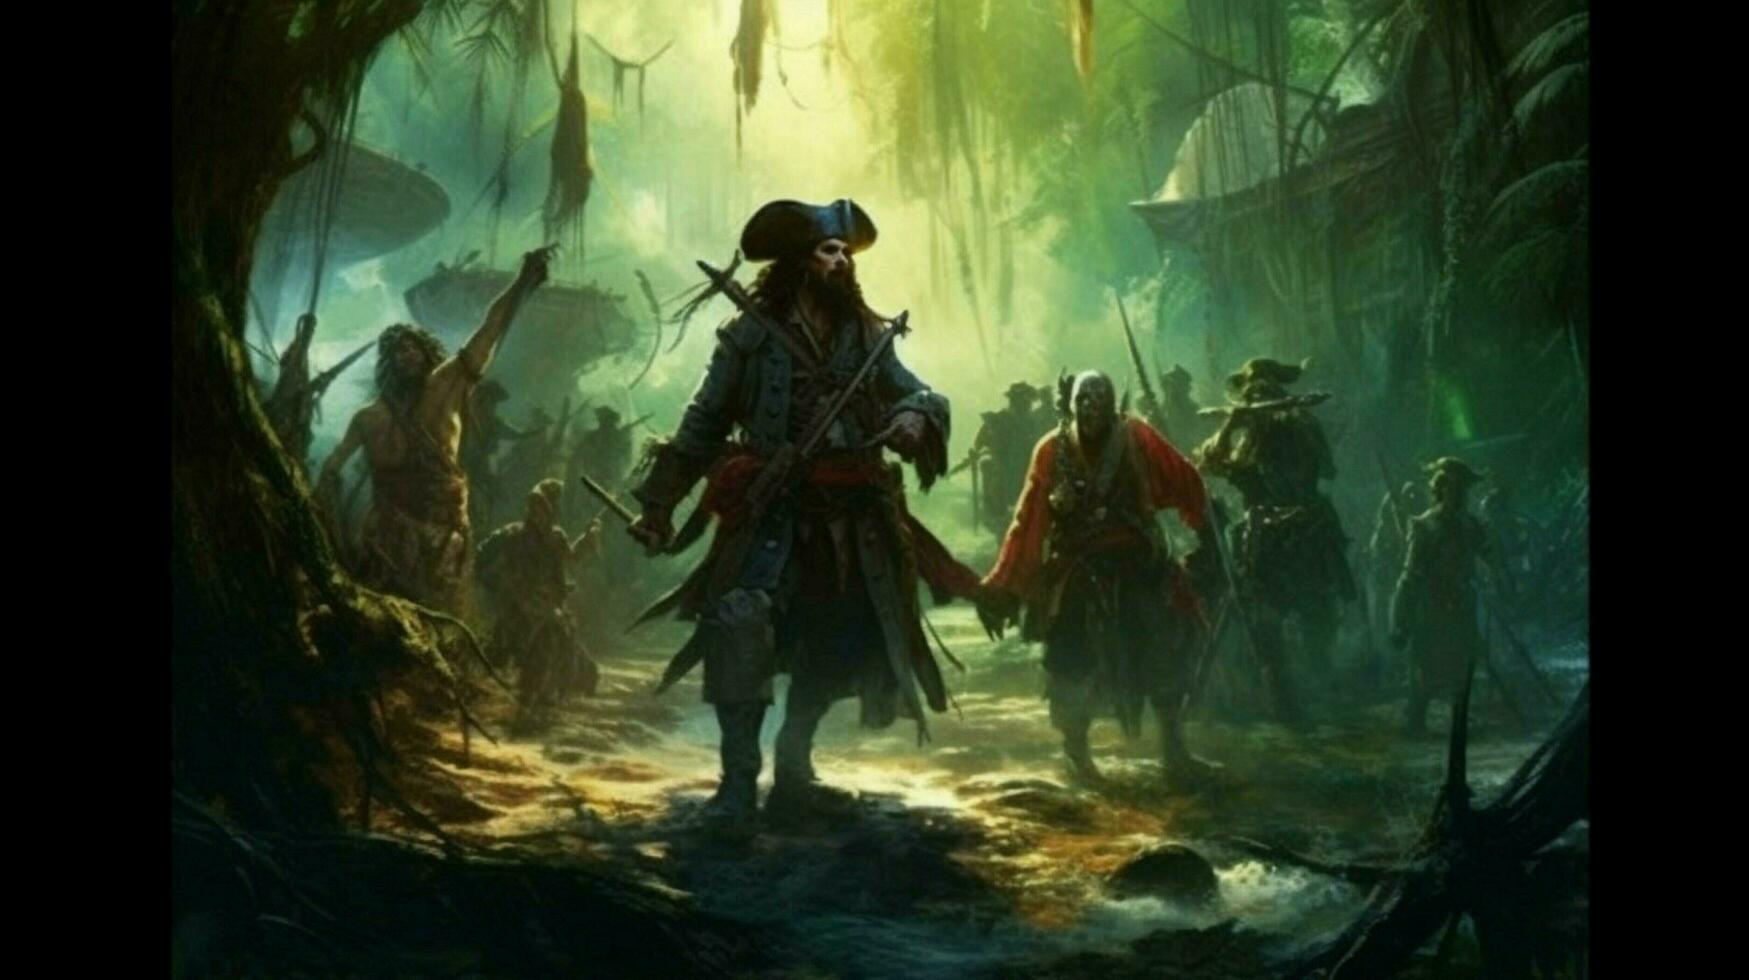 een poster voor de piraten van de caraïben foto